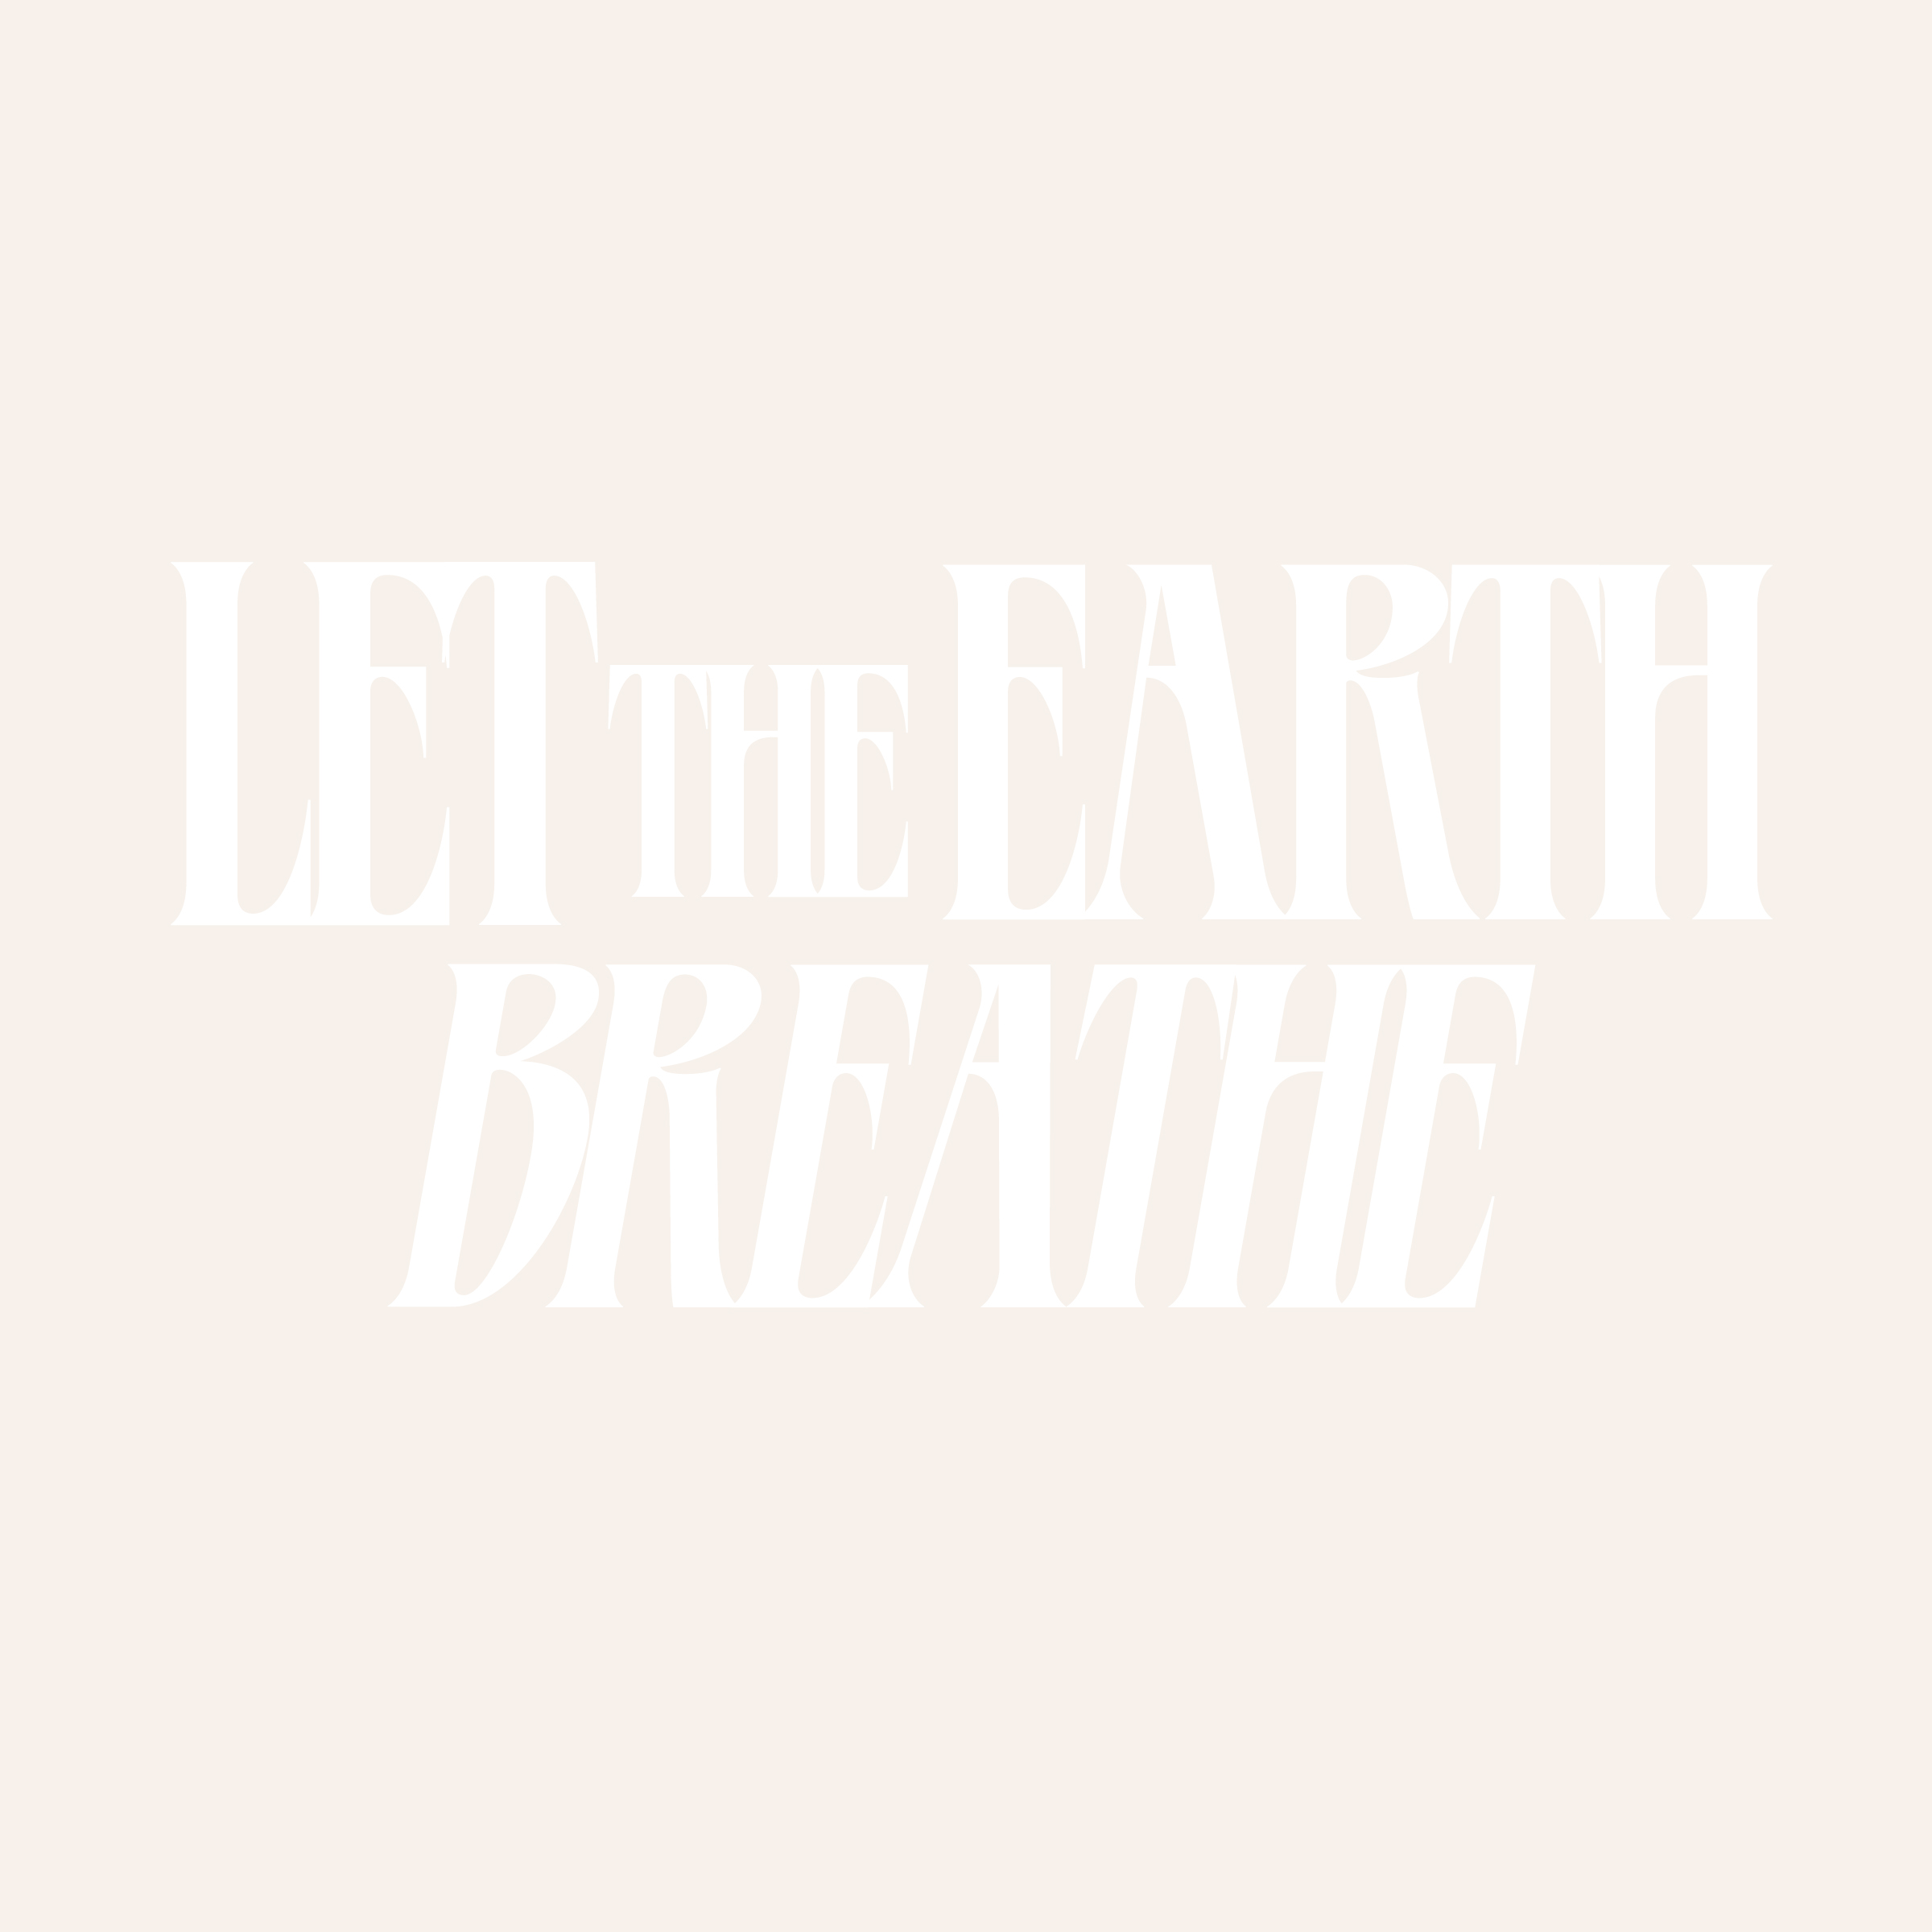 345-let-the-earth-breathe.jpg